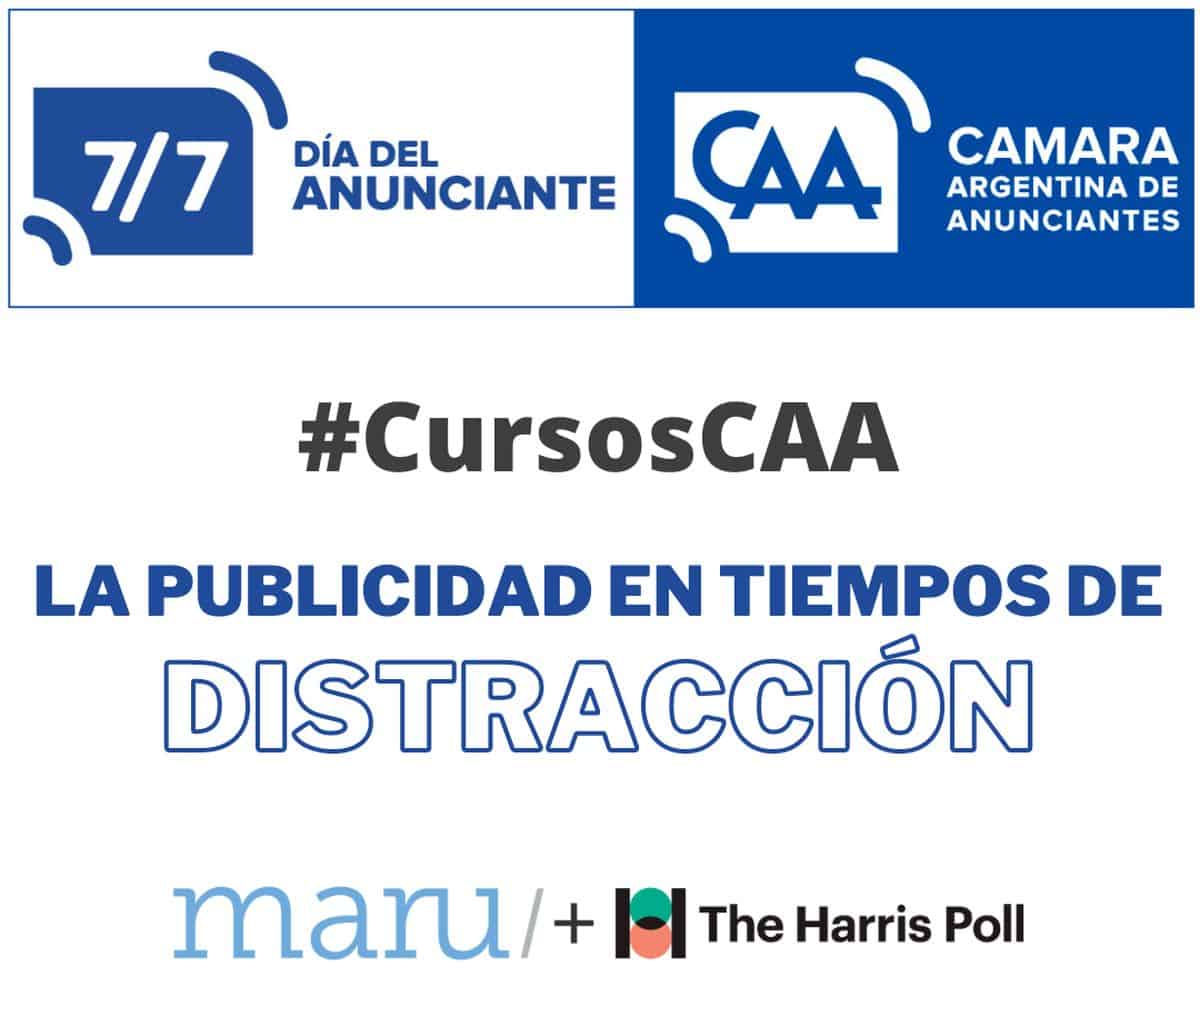 Portada de En el marco del Día del Anunciante, la Cámara Argentina de Anunciantes organiza #CursosCAA: La publicidad en tiempos de distracción